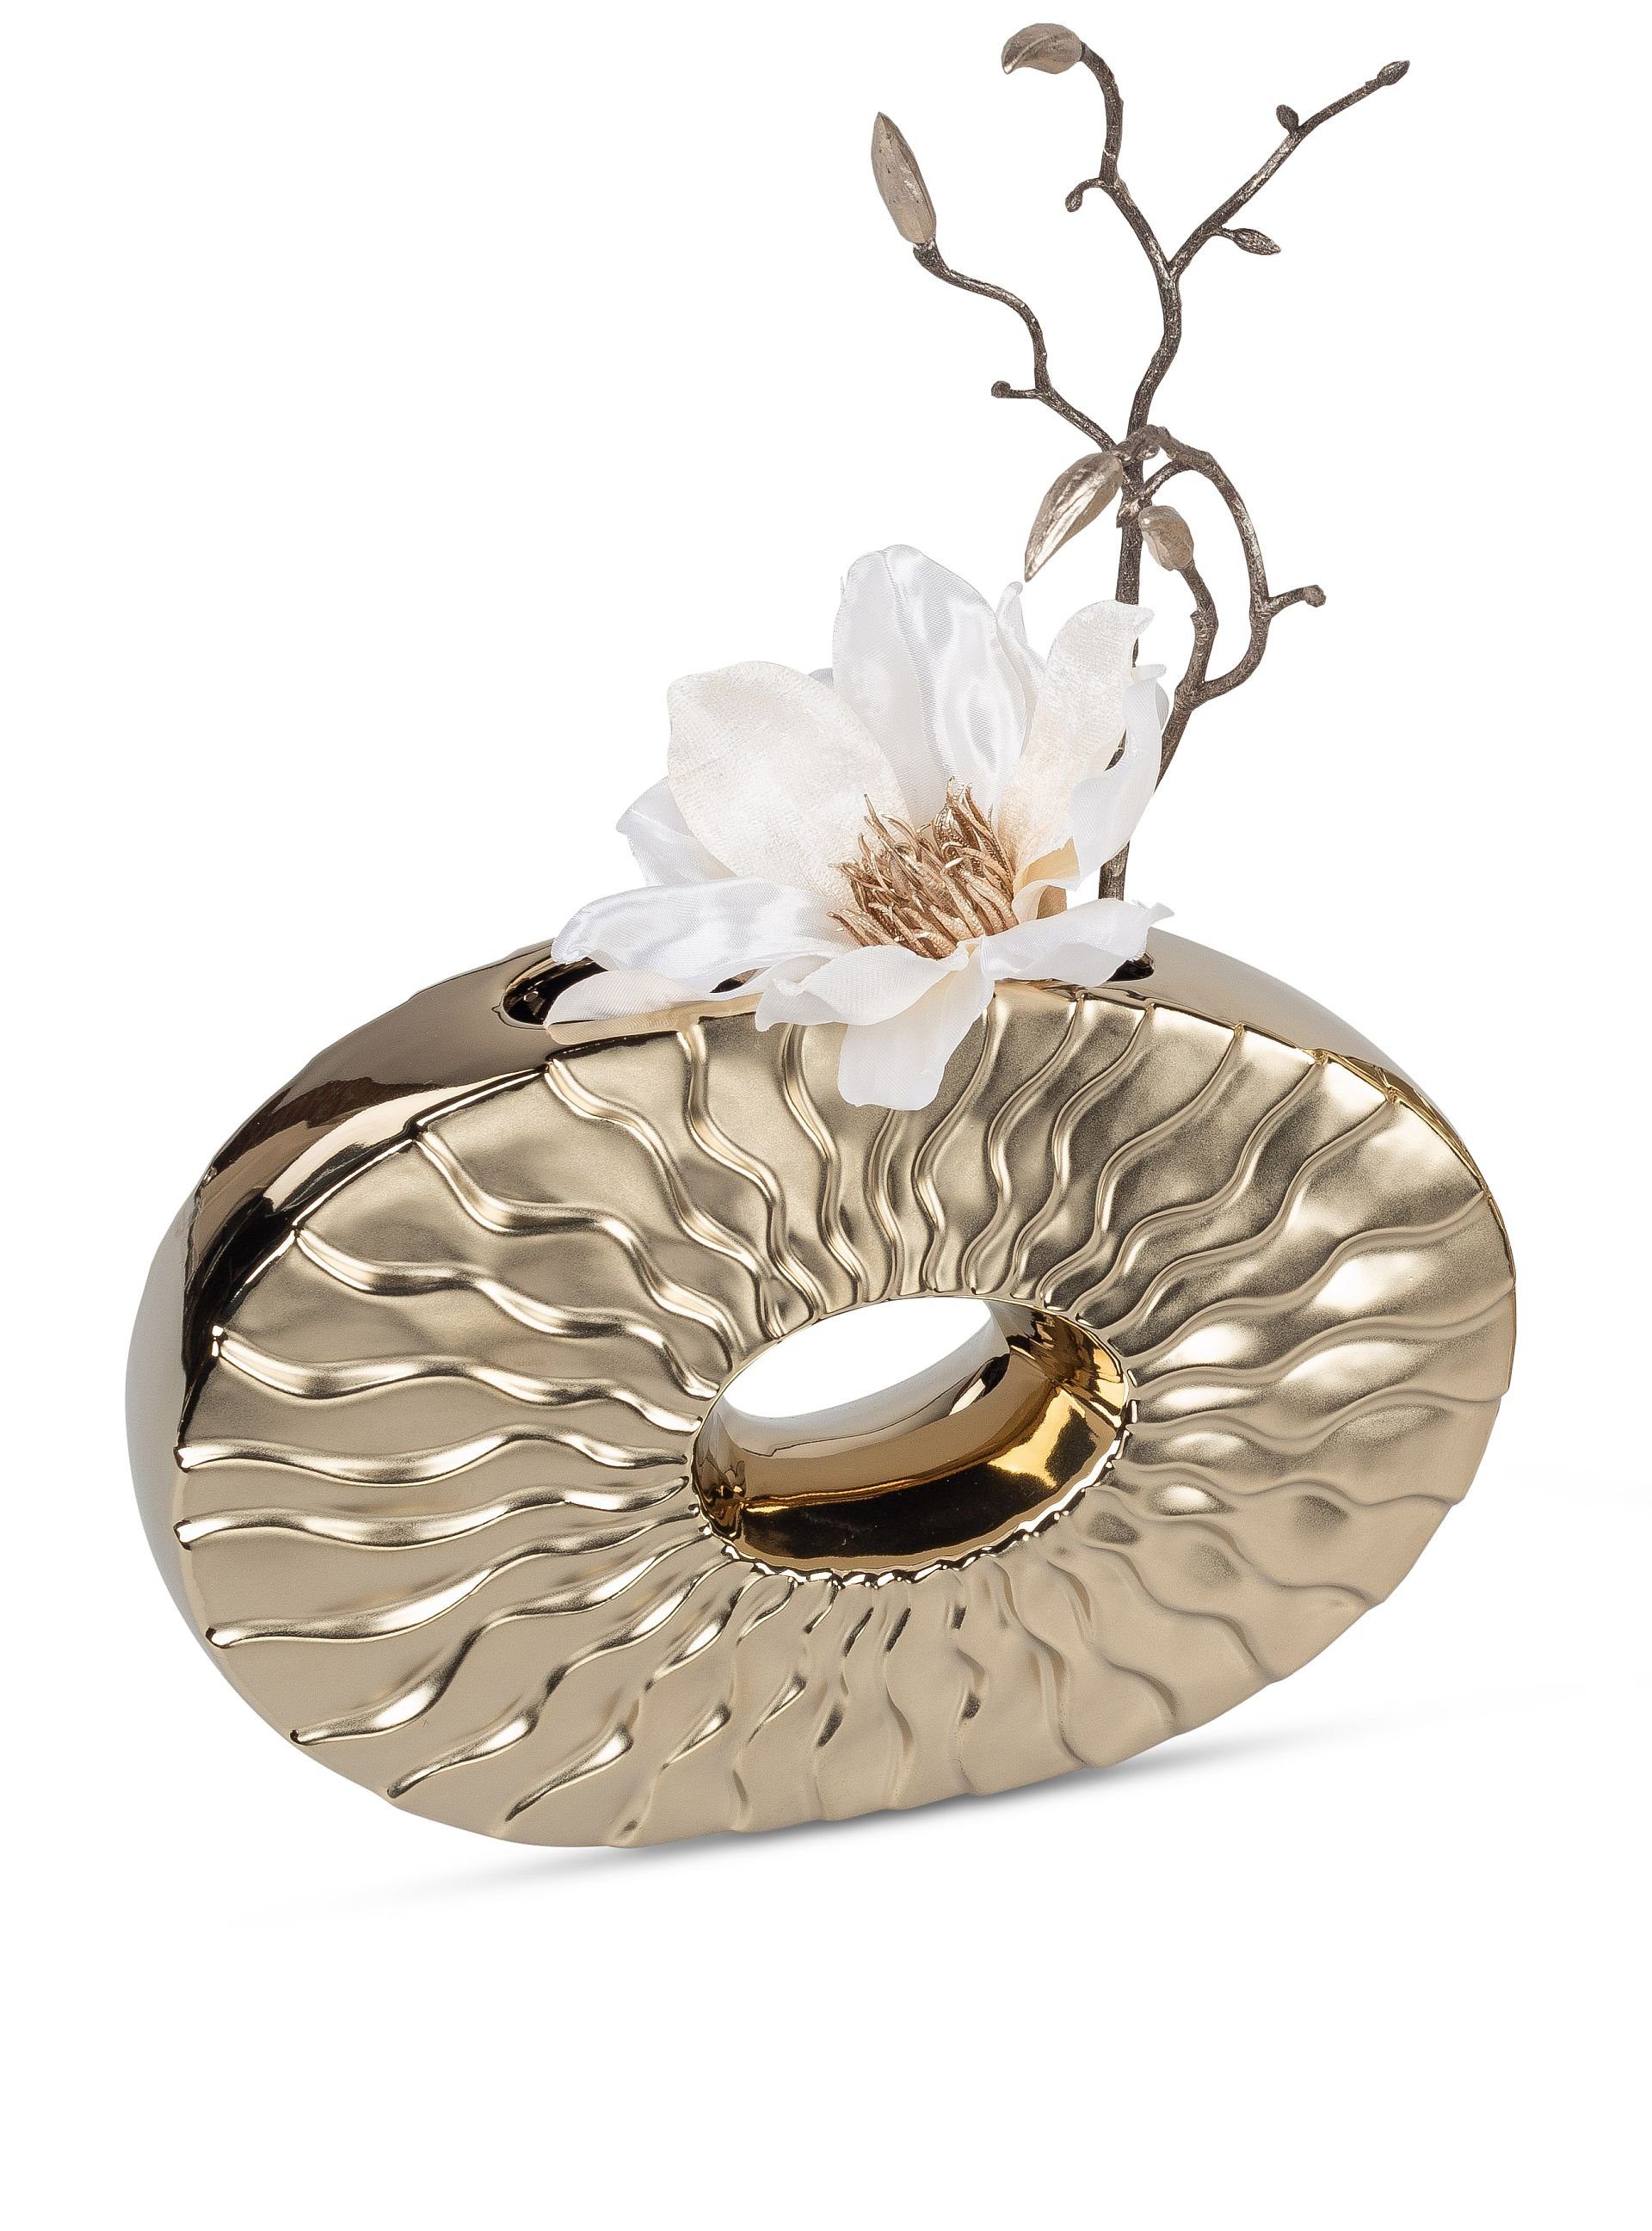 Small-Preis Dekovase »Formano Vase Tischvase oval / rund Gold matt /  glänzend in 2 Größen wählbar«, aus Keramik online kaufen | OTTO